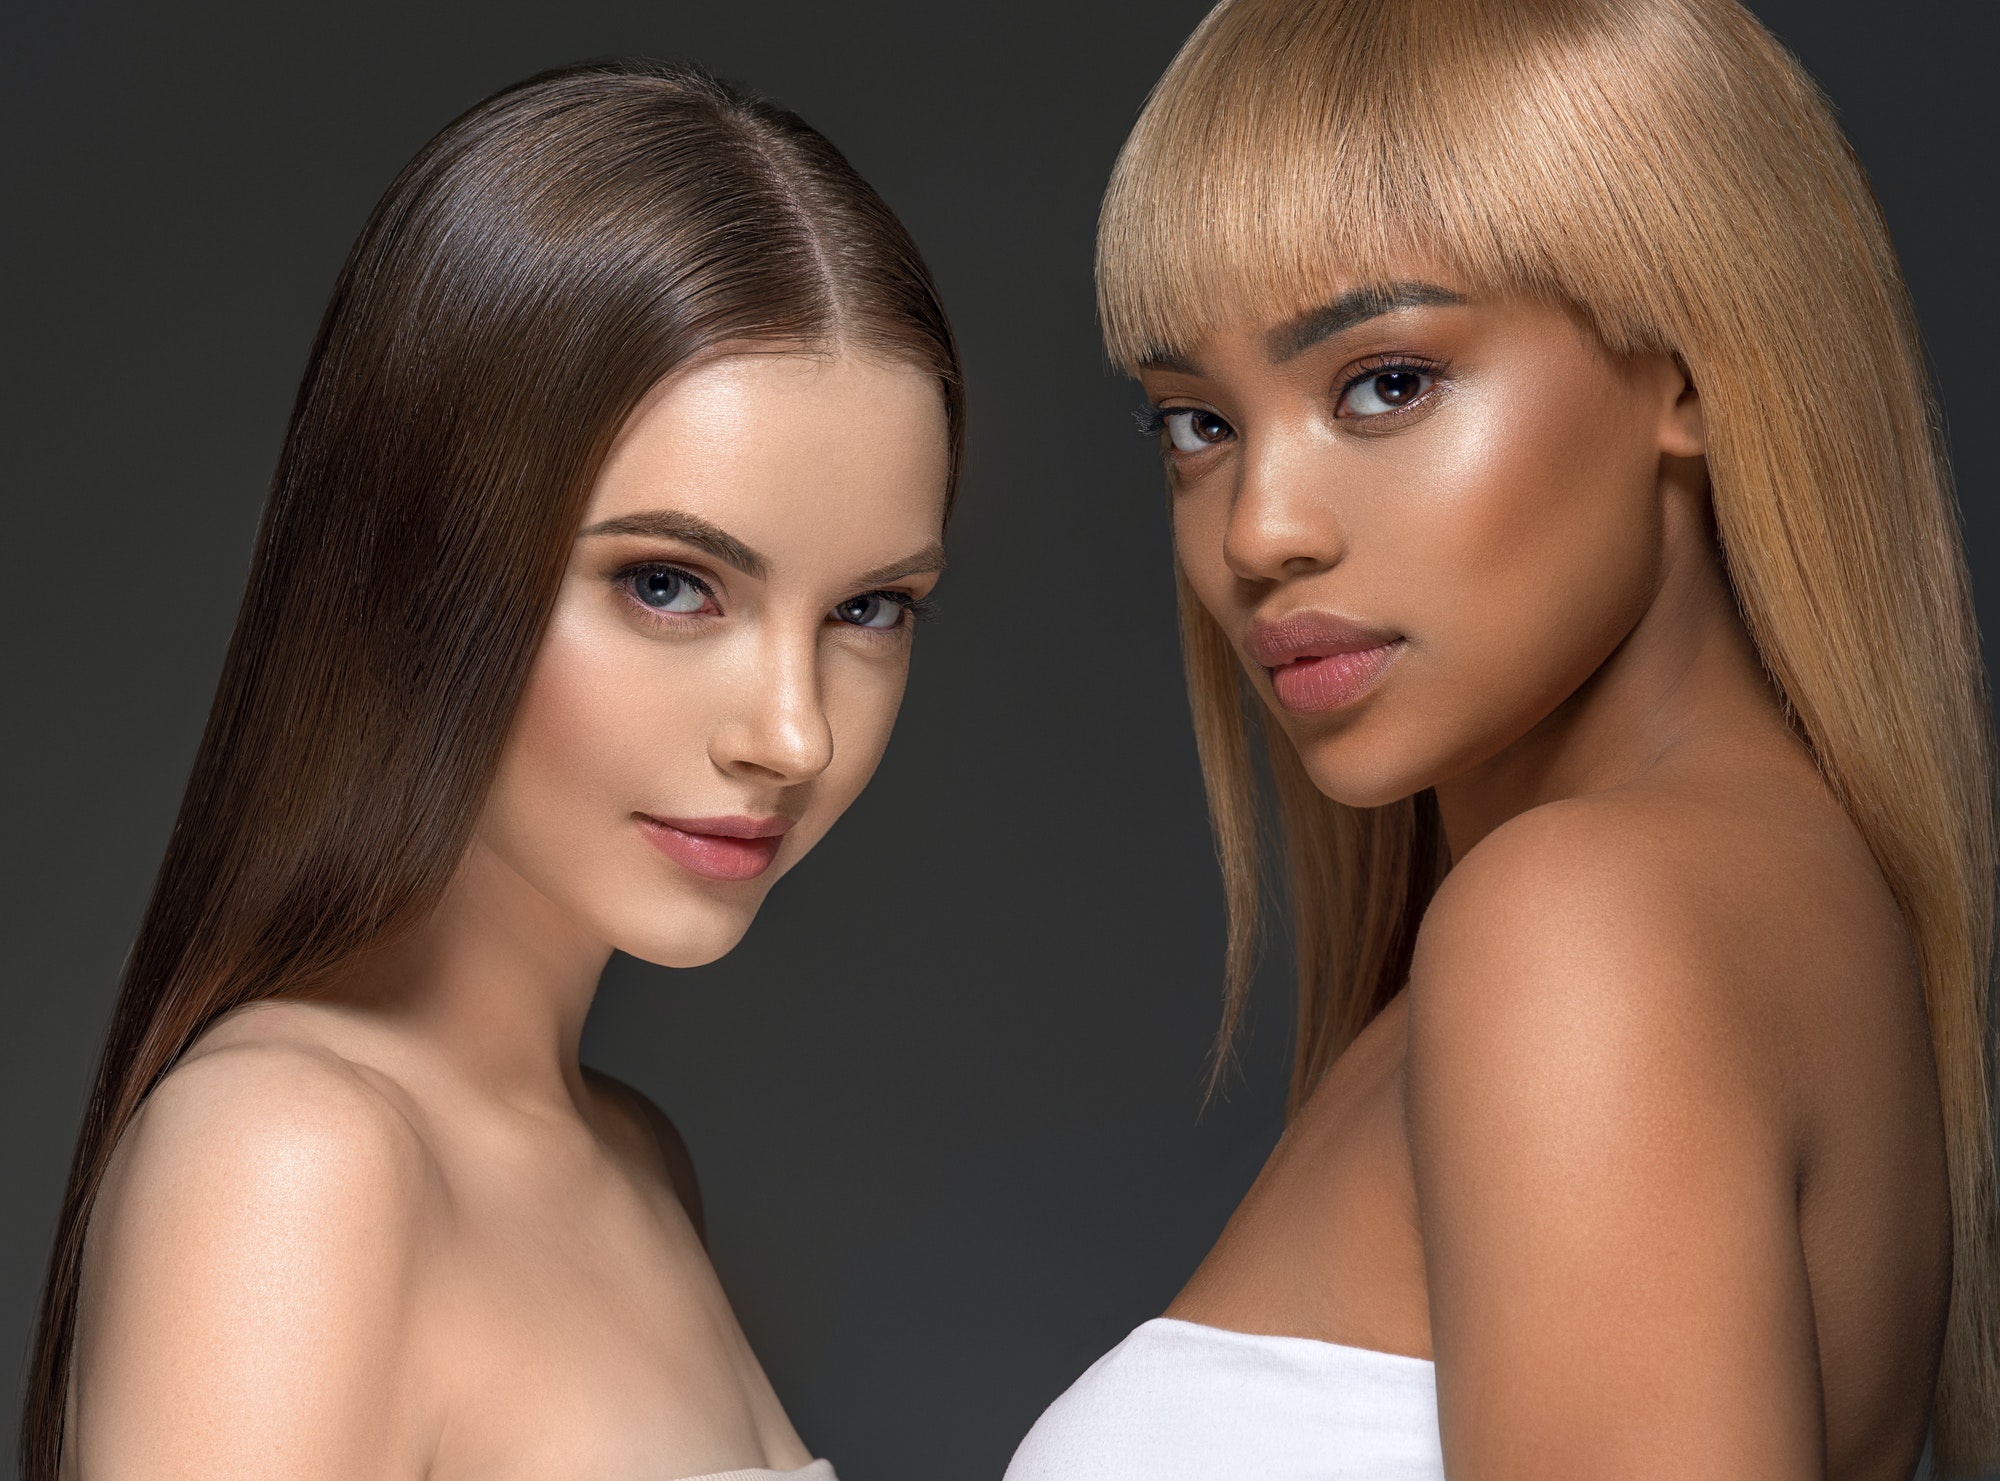 Beauty group women healthy skin care ethnic model